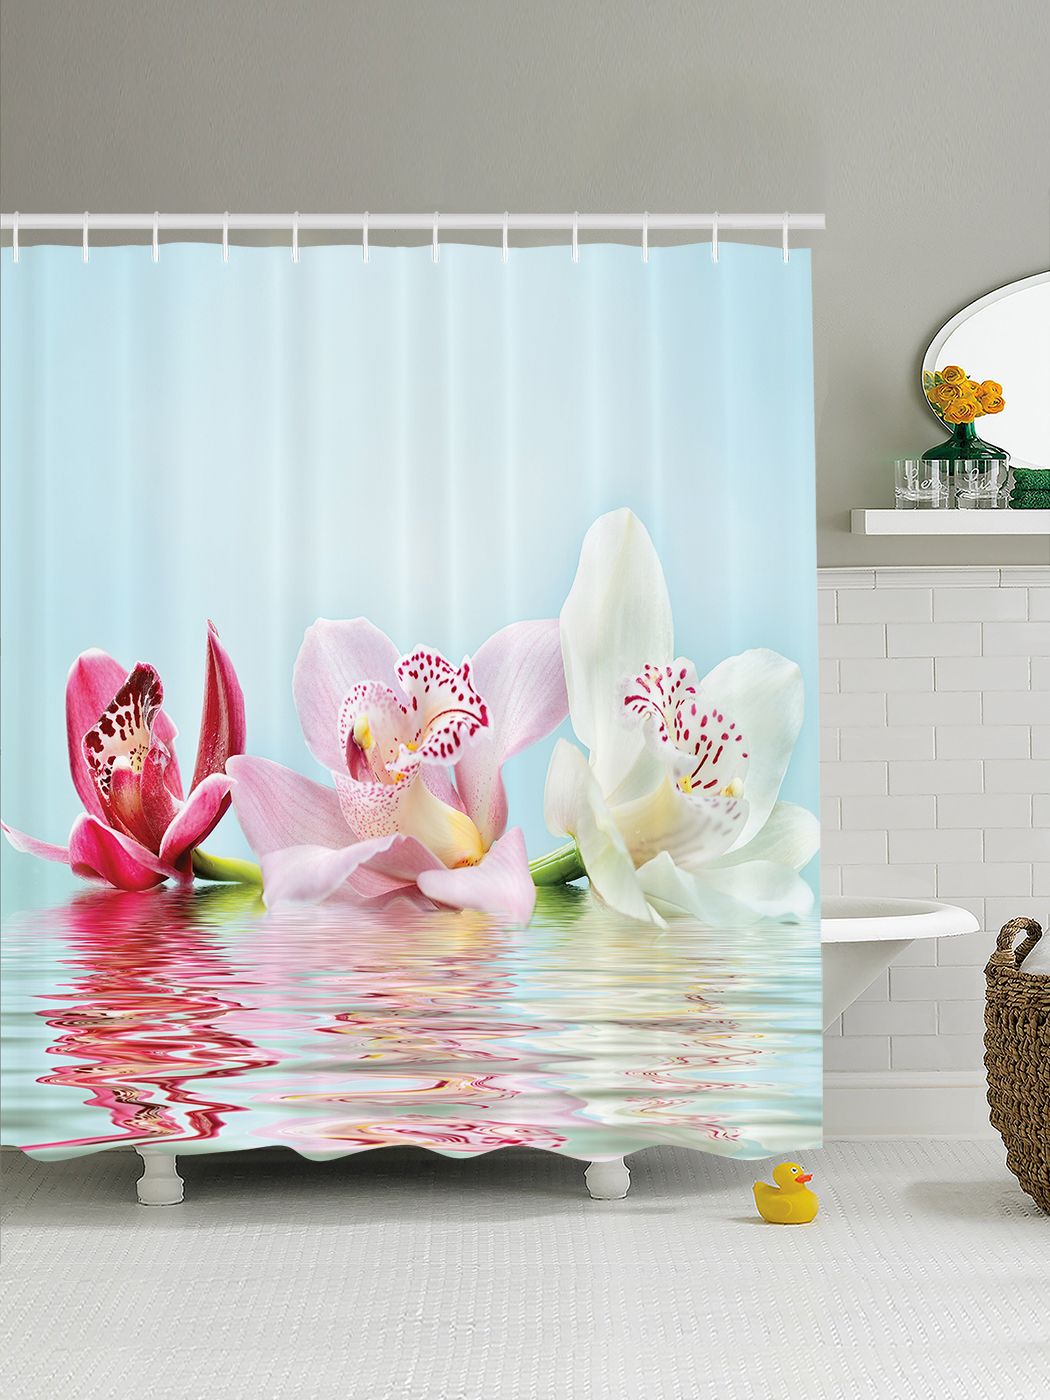 Шторки для ванной 150. Штора для ванной Валиант 3д. JOYARTY шторы для ванной. Шторки в ванную комнату с орхидеями. Шторка для ванной "Орхидея".